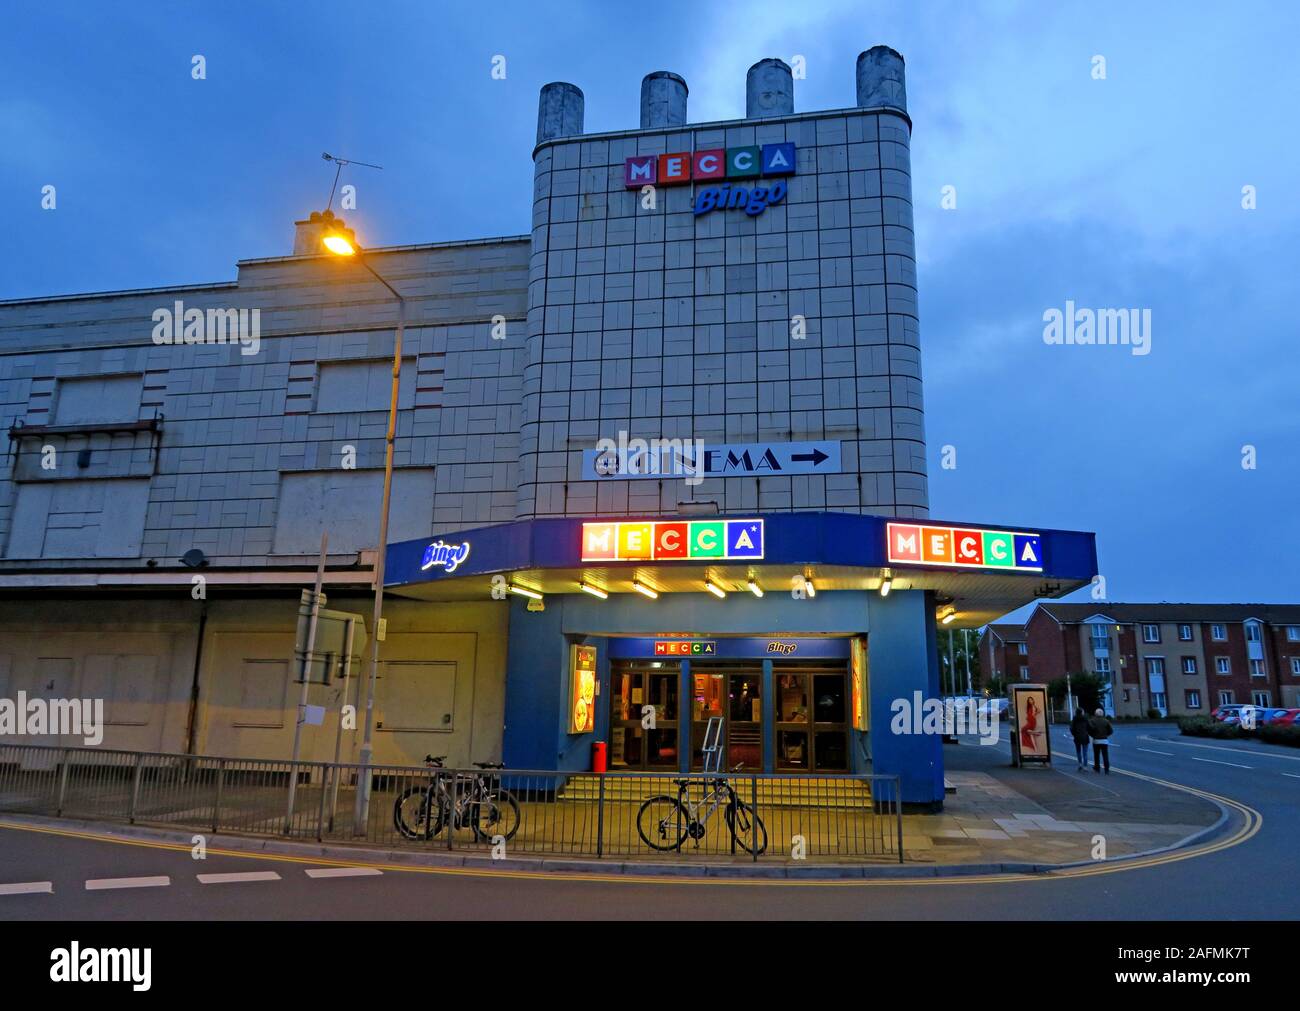 Bingo de la Mecque, Bridgwater, Somerset, Angleterre du Sud-Ouest, Angleterre, Royaume-Uni, au crépuscule avec des cycles à l'extérieur Banque D'Images